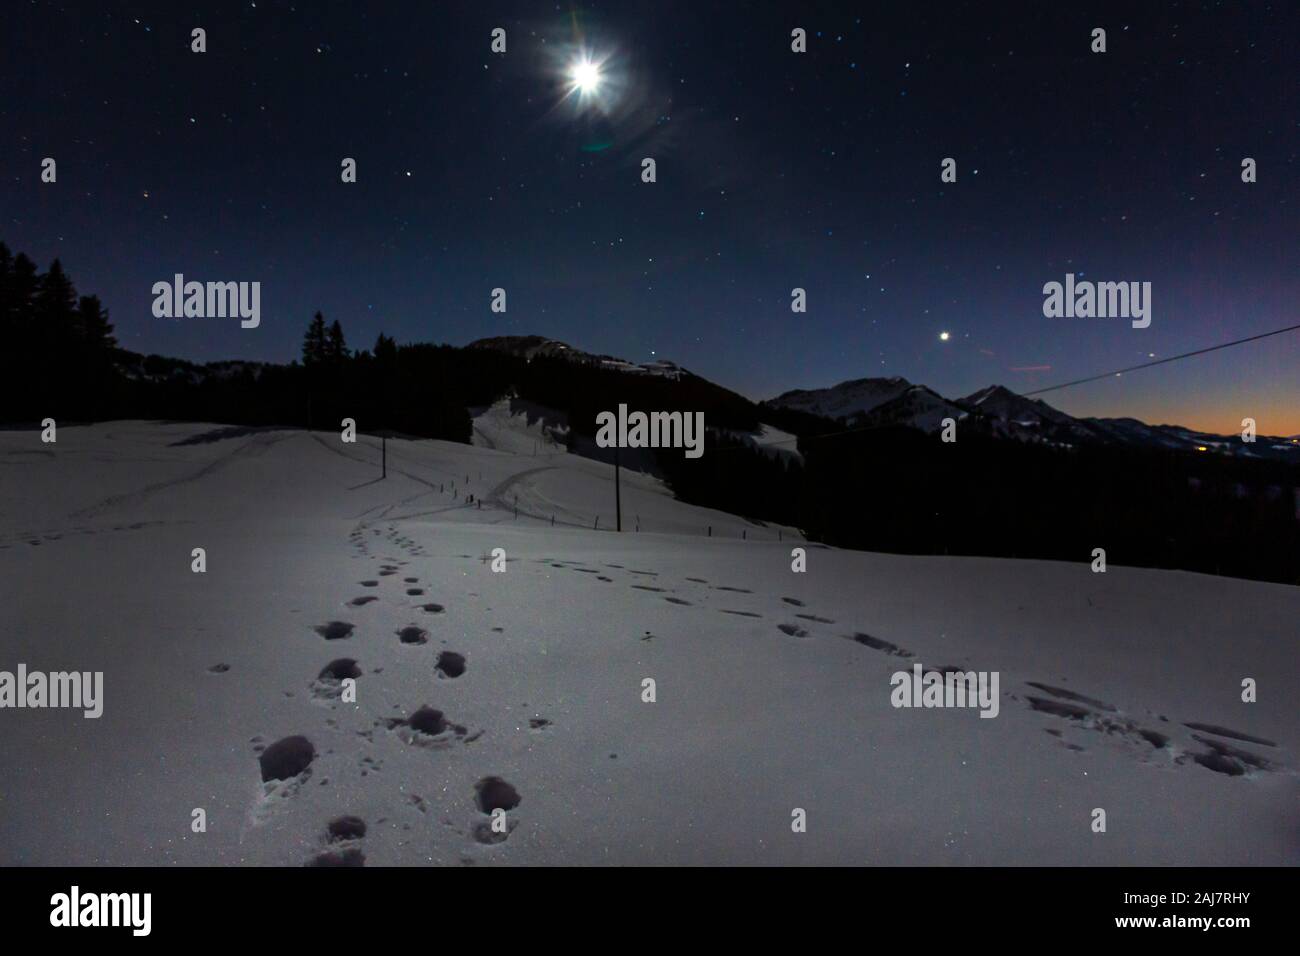 Germany, Bavaria, Alpes Allgaeu, scène de nuit d'hiver avec l'ancien refuge de montagne Banque D'Images